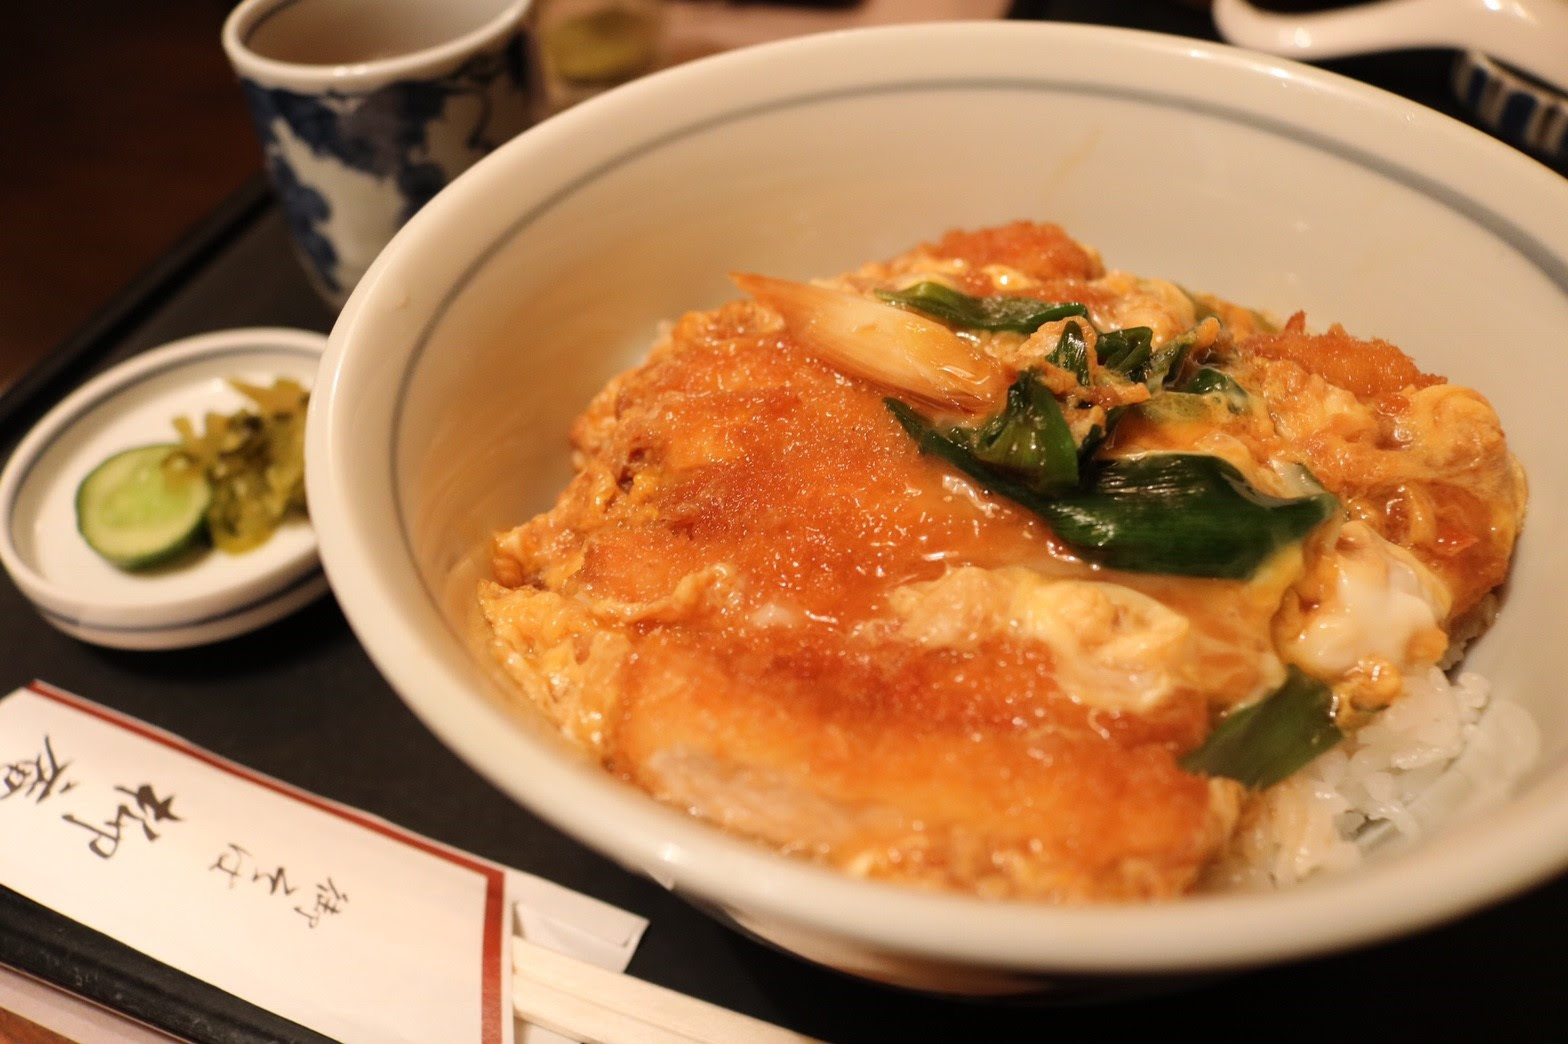 京都市役所前 柳庵 でお蕎麦屋さんのカツ丼美味しい説 新マッハのオススメごはんですよ